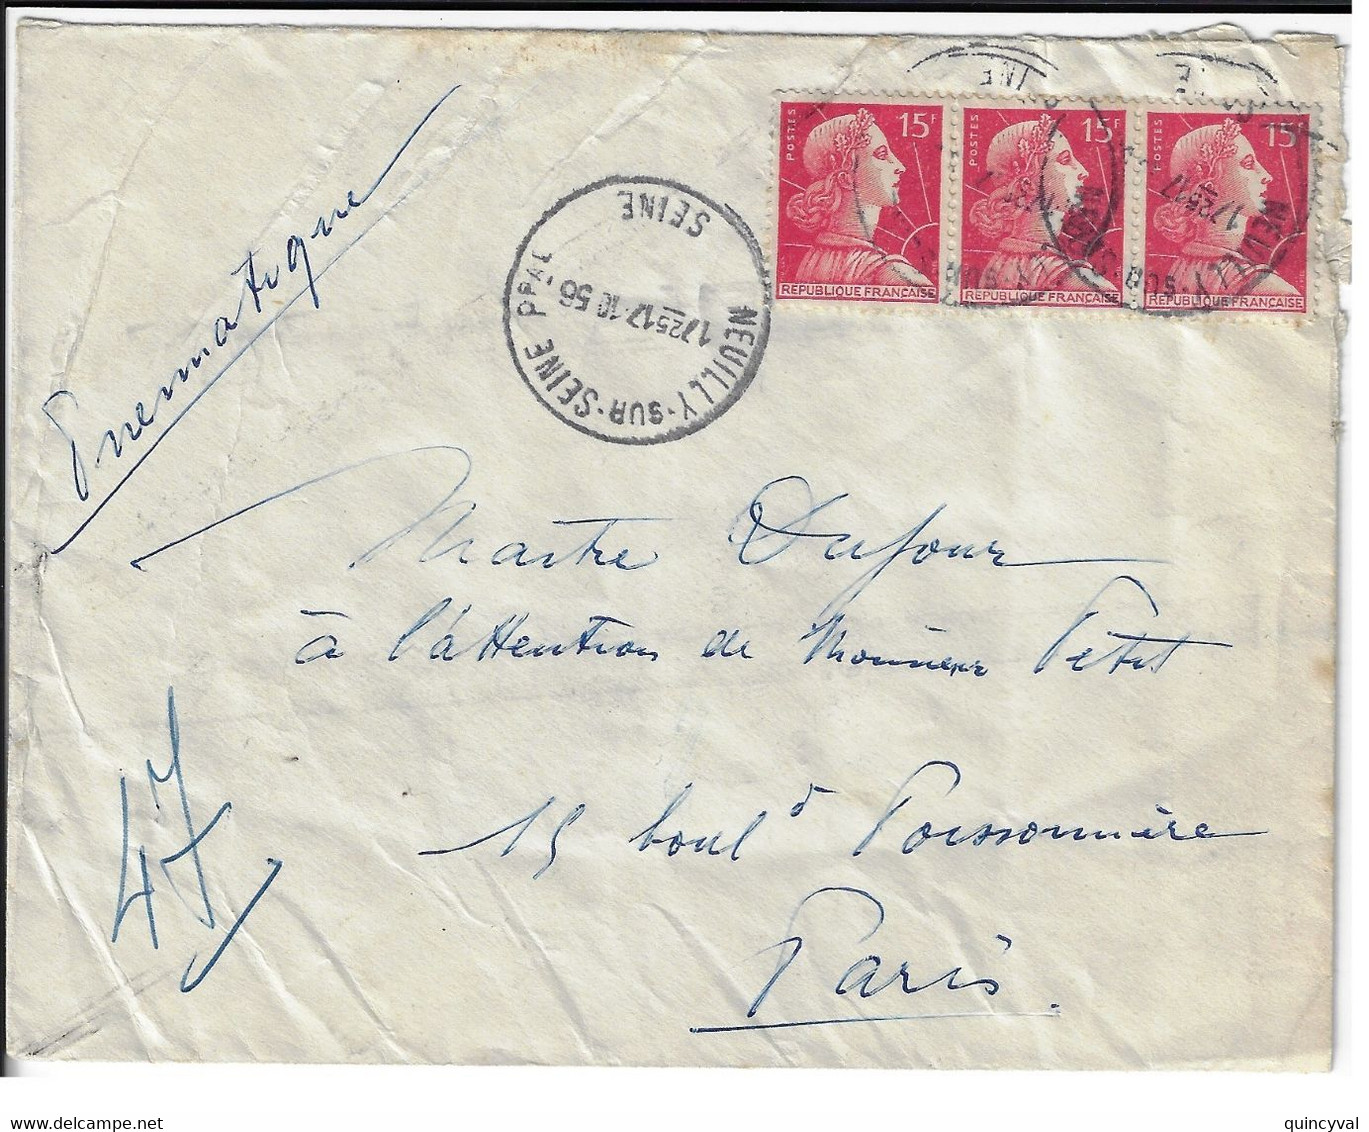 NEUILLY Sur SEINE Enveloppe Pneumatique 15 F Muller Rouge Yv 1011 Dest Paris 47 Via Paris Bourse PN Ob 17 10 1956 - Storia Postale